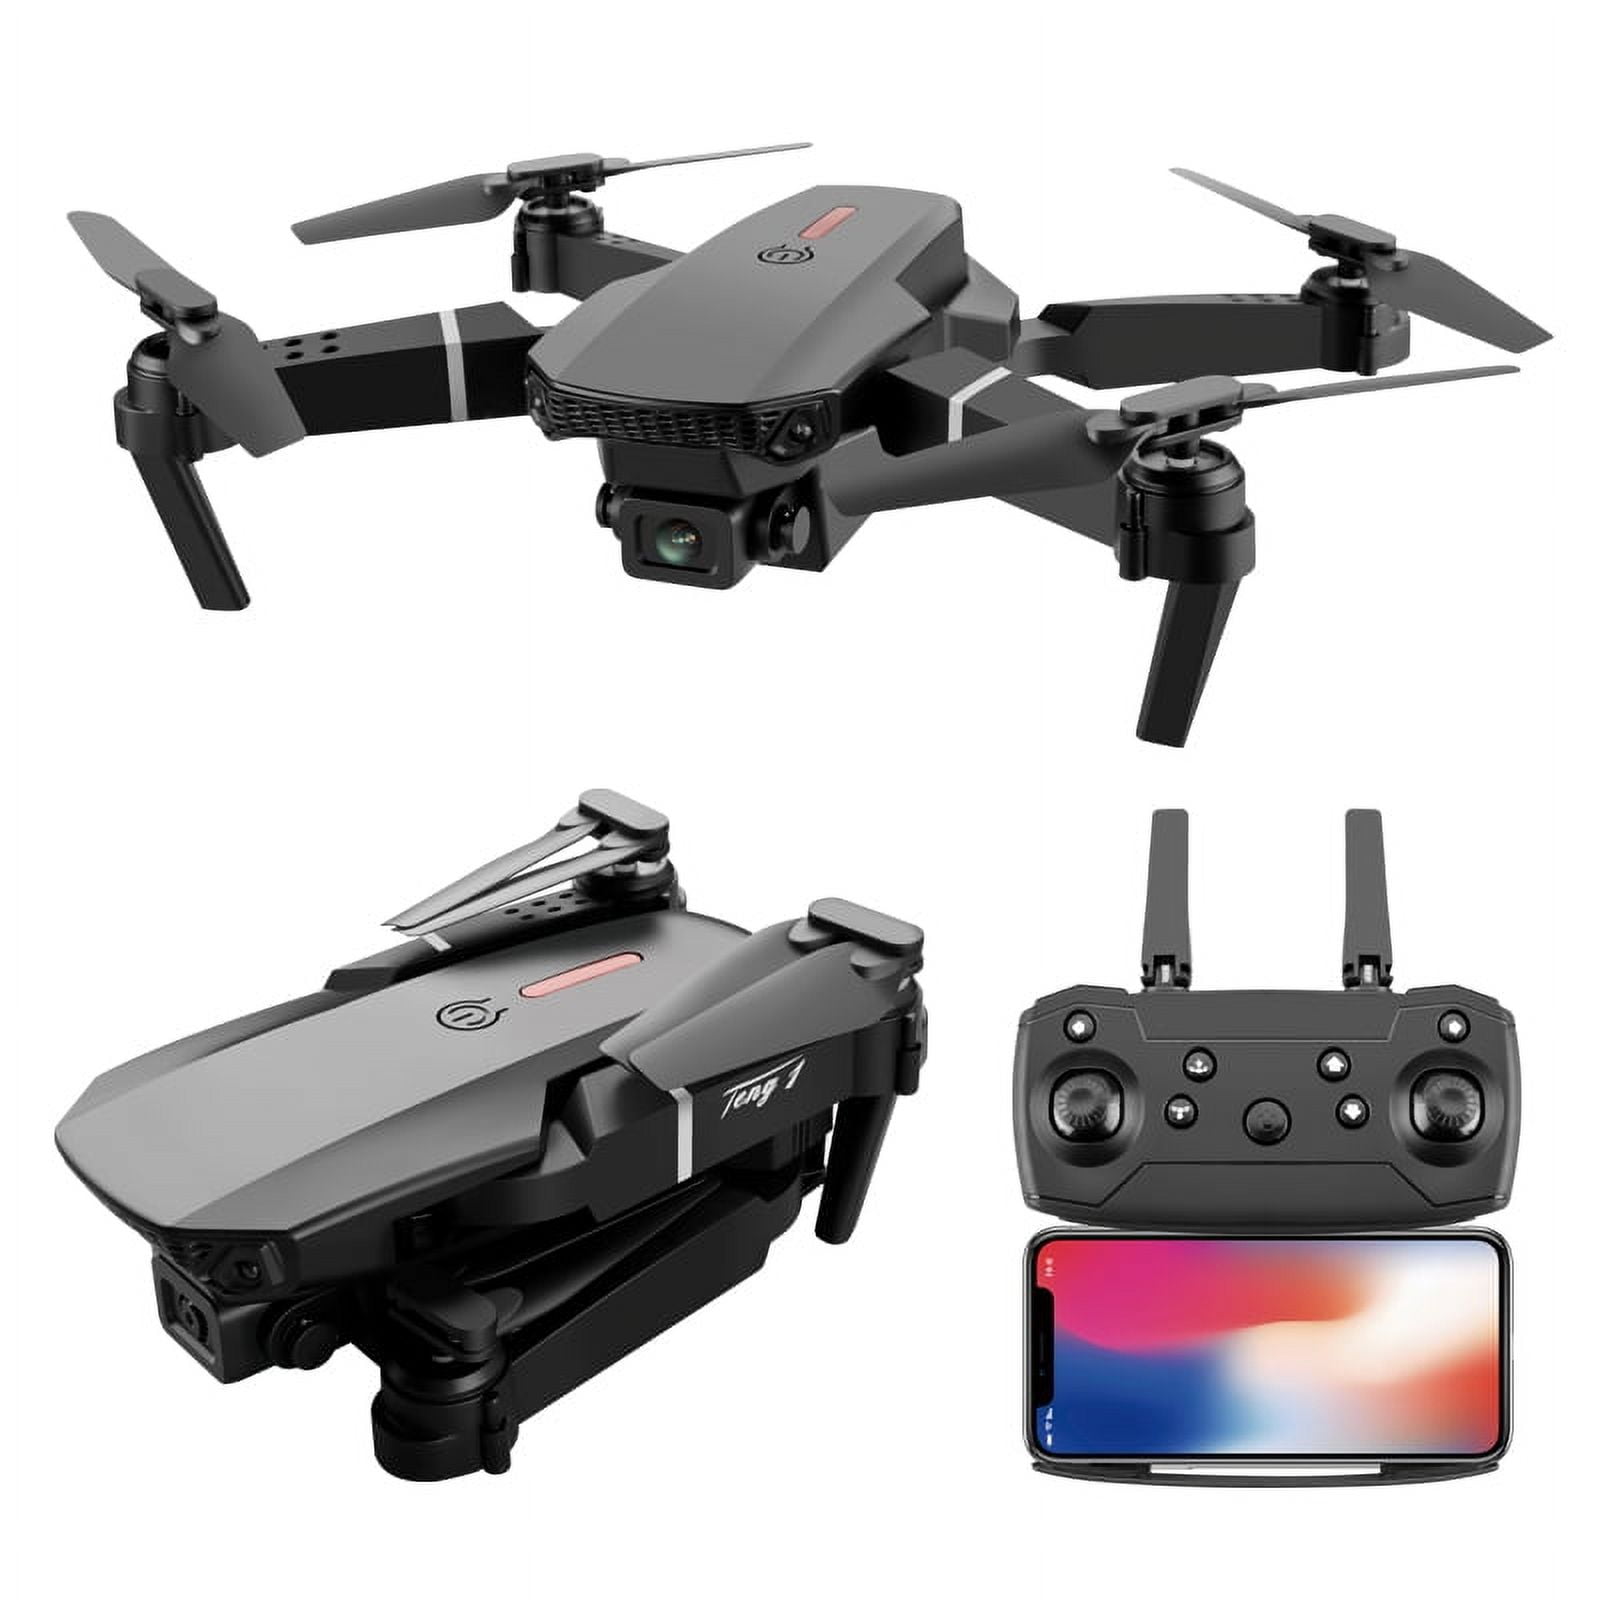 E88 PRO 4K Dual Camera Long Range Foldable Quadcopter Fpv Drone